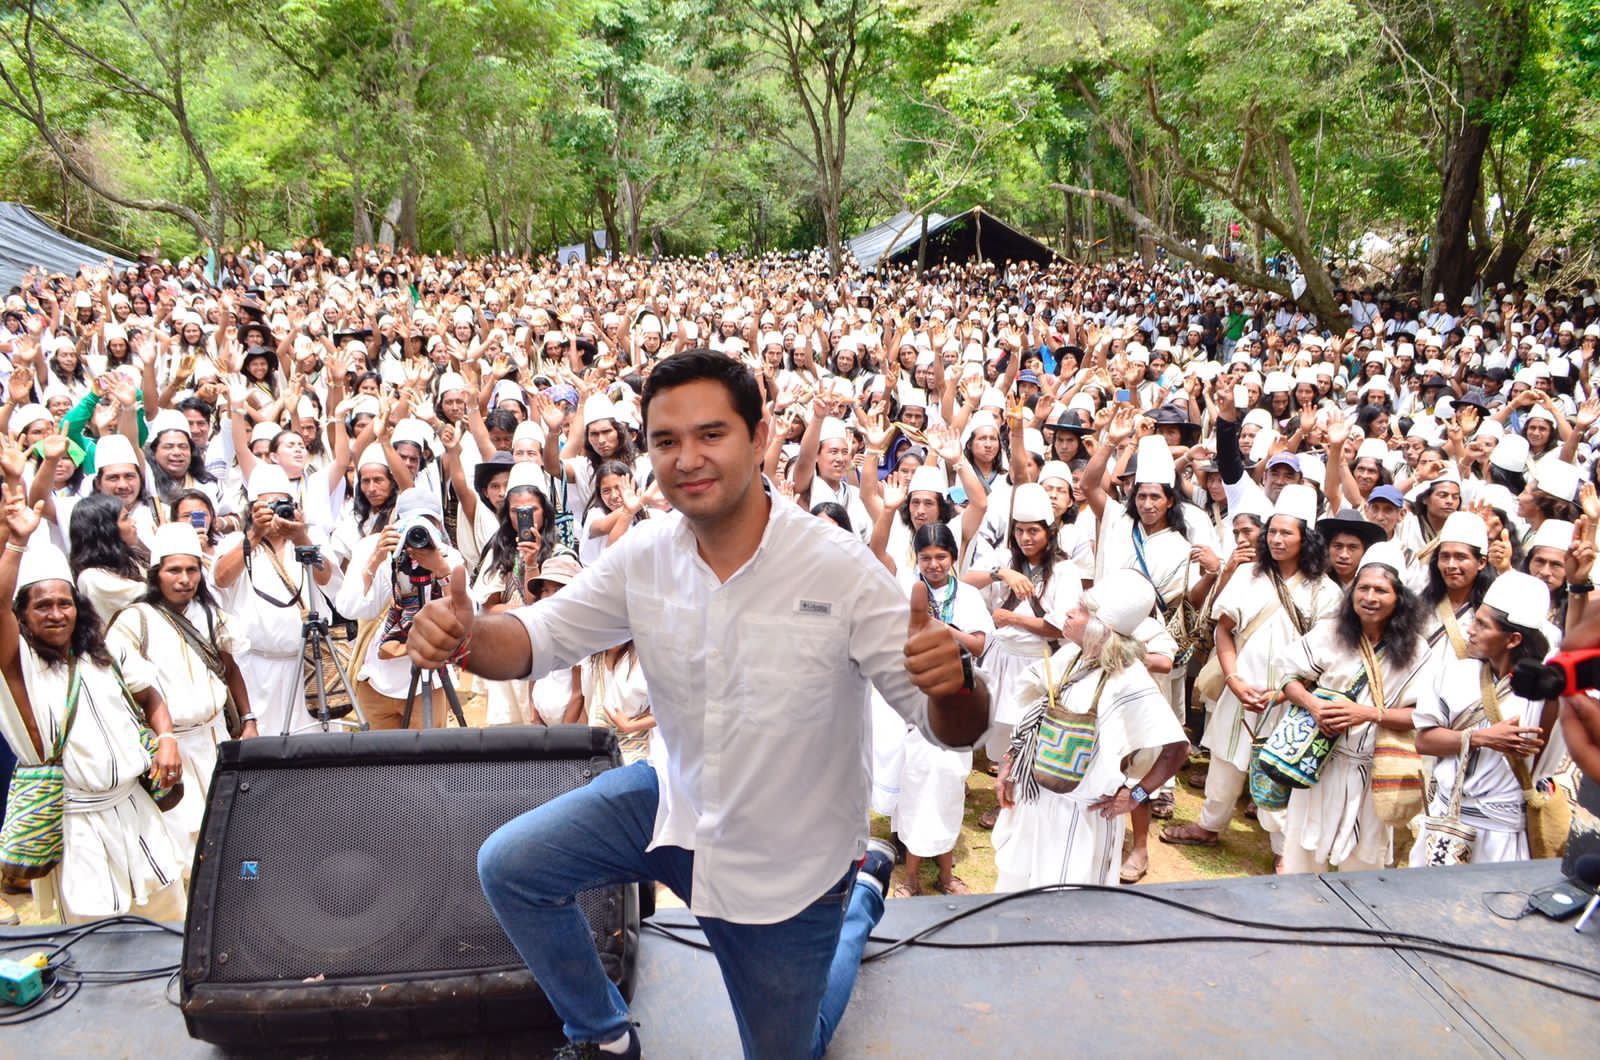 “Vine a refrendar mi compromiso con ustedes”: Alcalde Mello Castro ante Asamblea General del pueblo Arhuaco